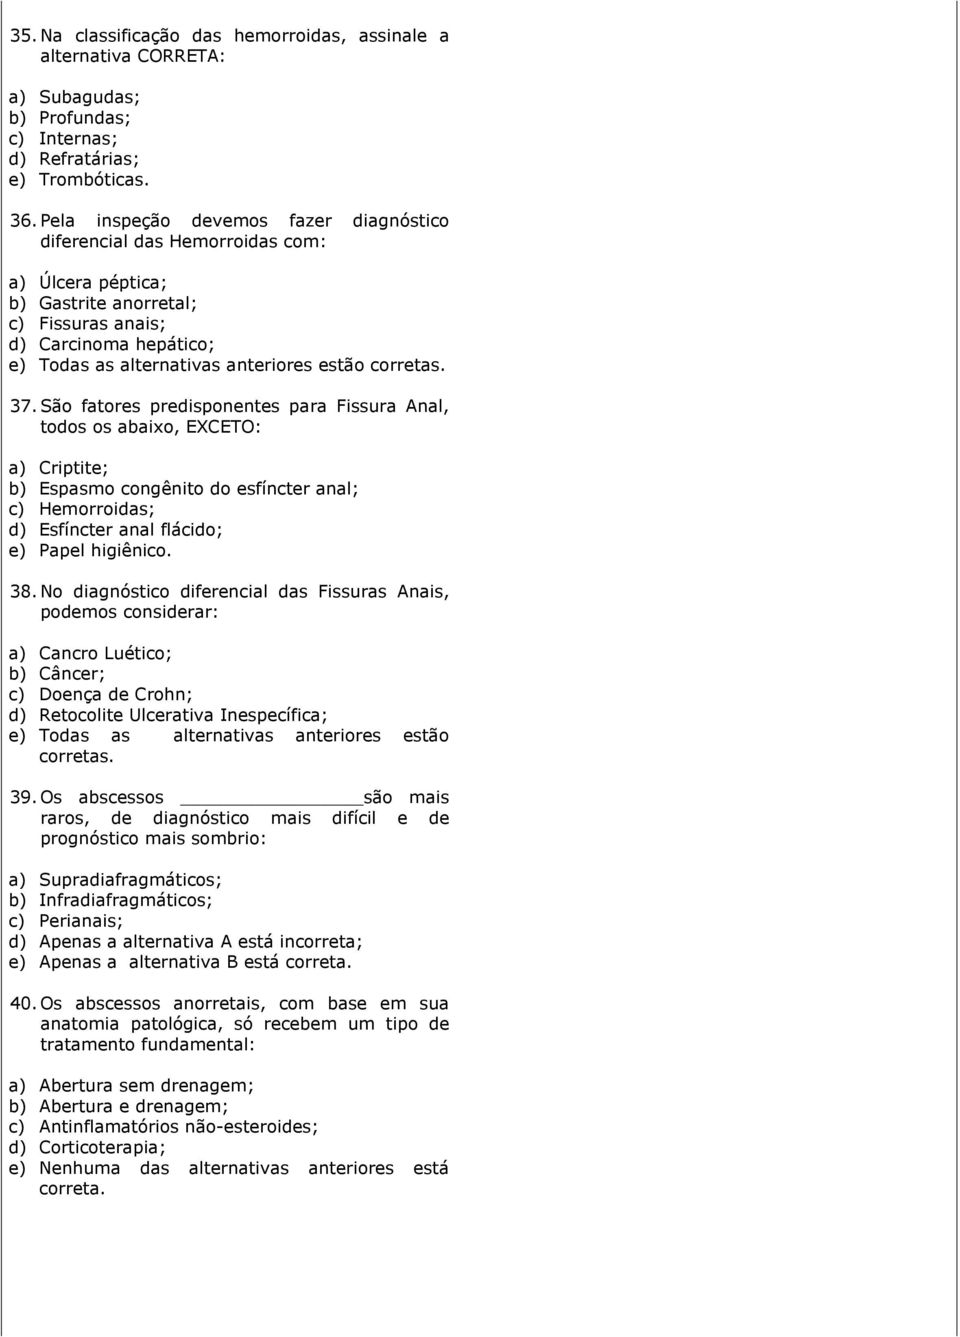 São fatores predisponentes para Fissura Anal, todos os abaixo, EXCETO: a) Criptite; b) Espasmo congênito do esfíncter anal; c) Hemorroidas; d) Esfíncter anal flácido; e) Papel higiênico. 38.